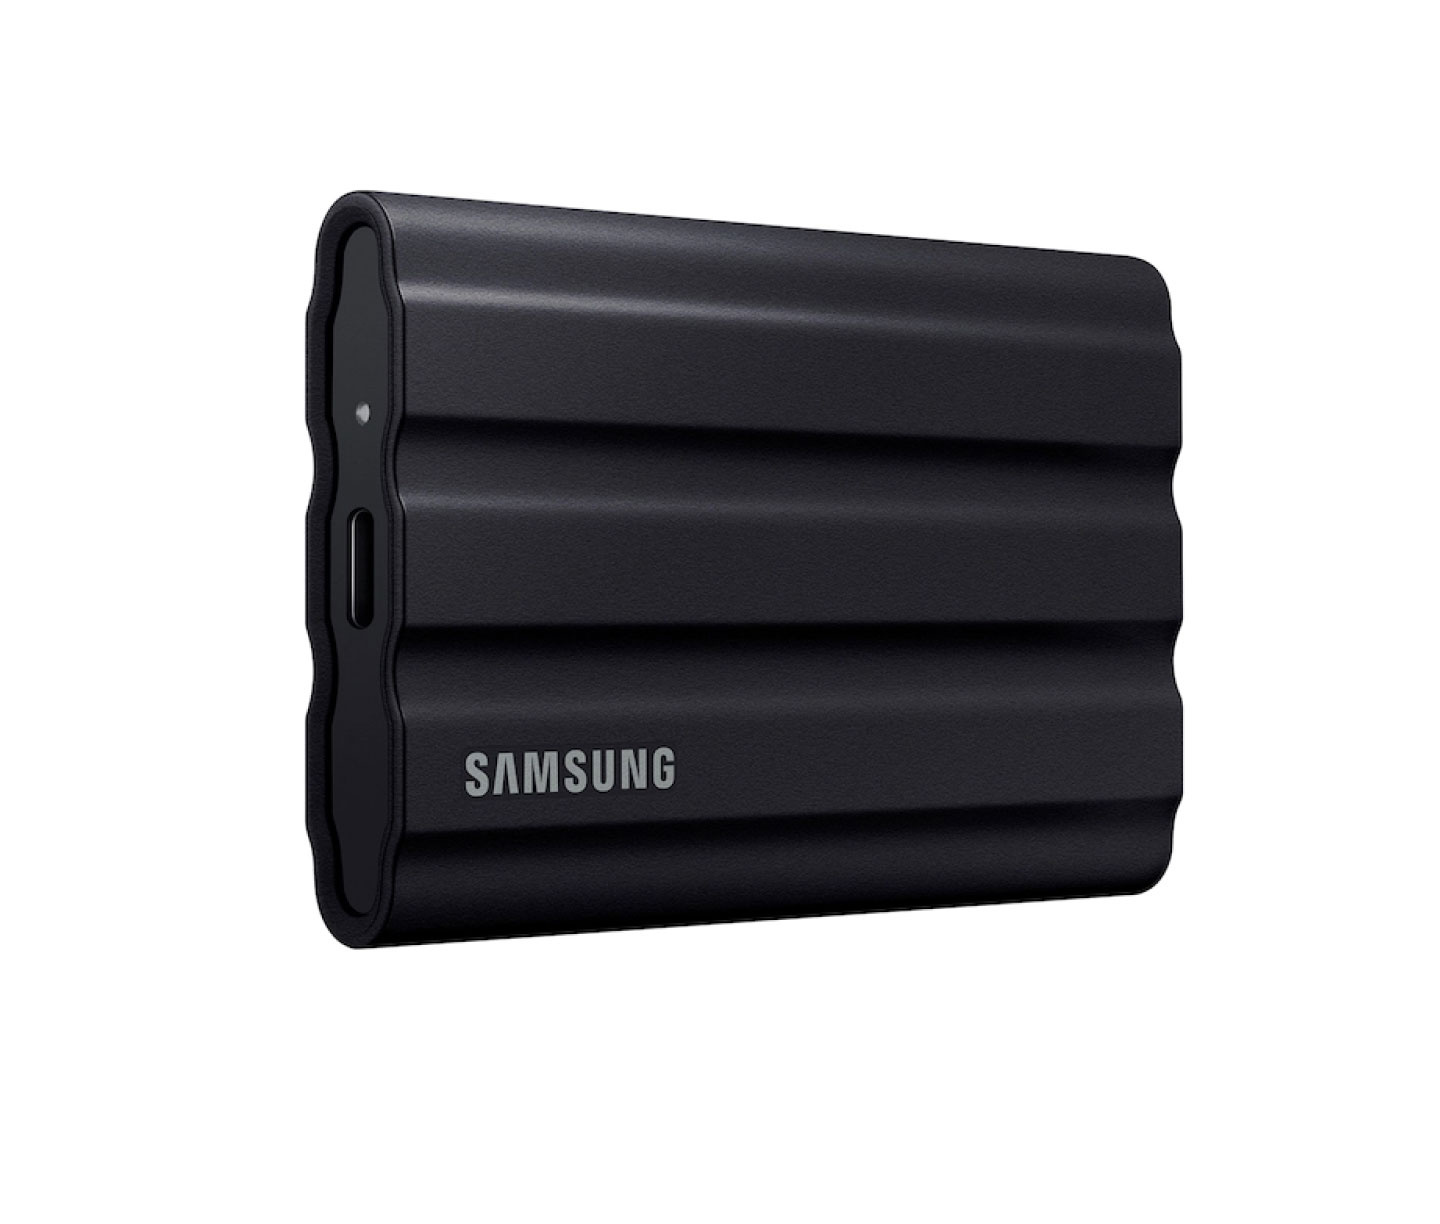 Samsung external hard drive